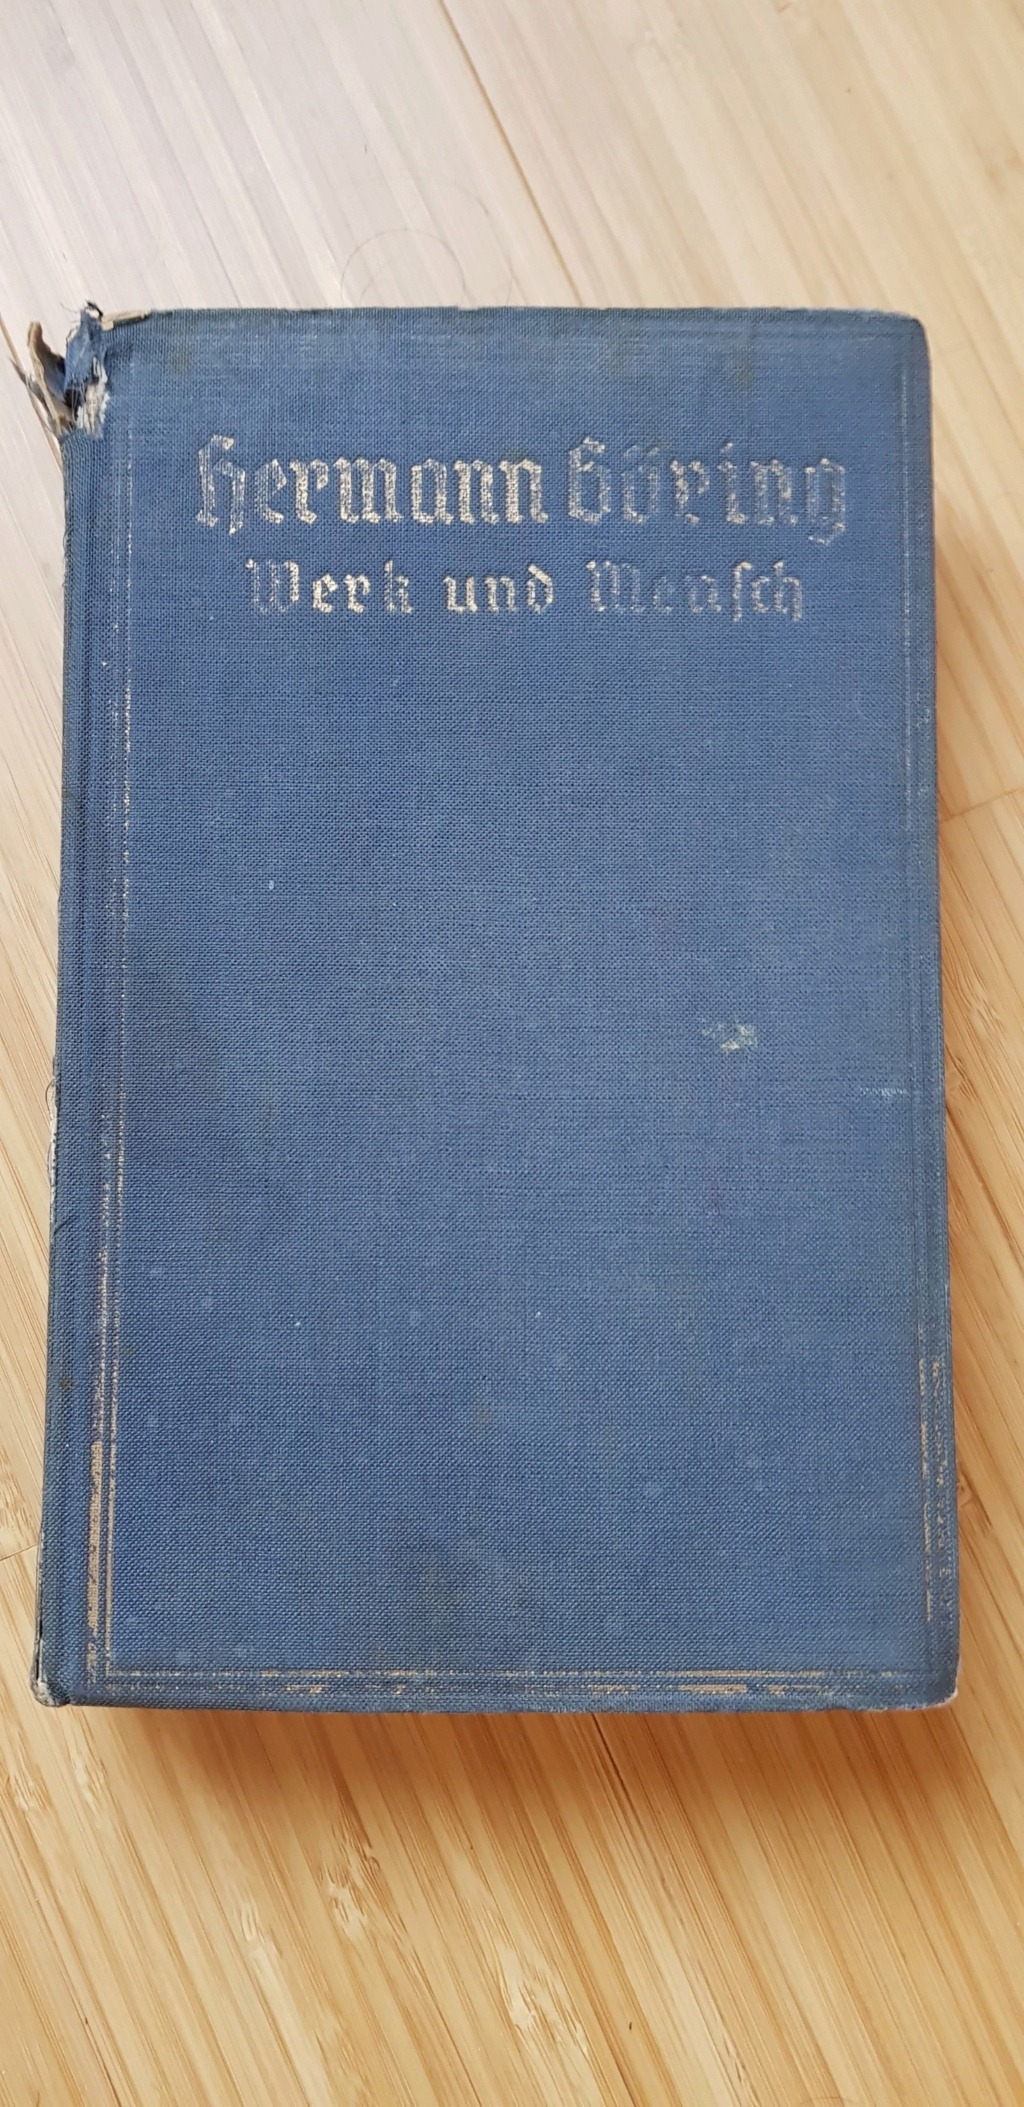 Livre Hermann Goering daté 1941 et numéroté? 20211019